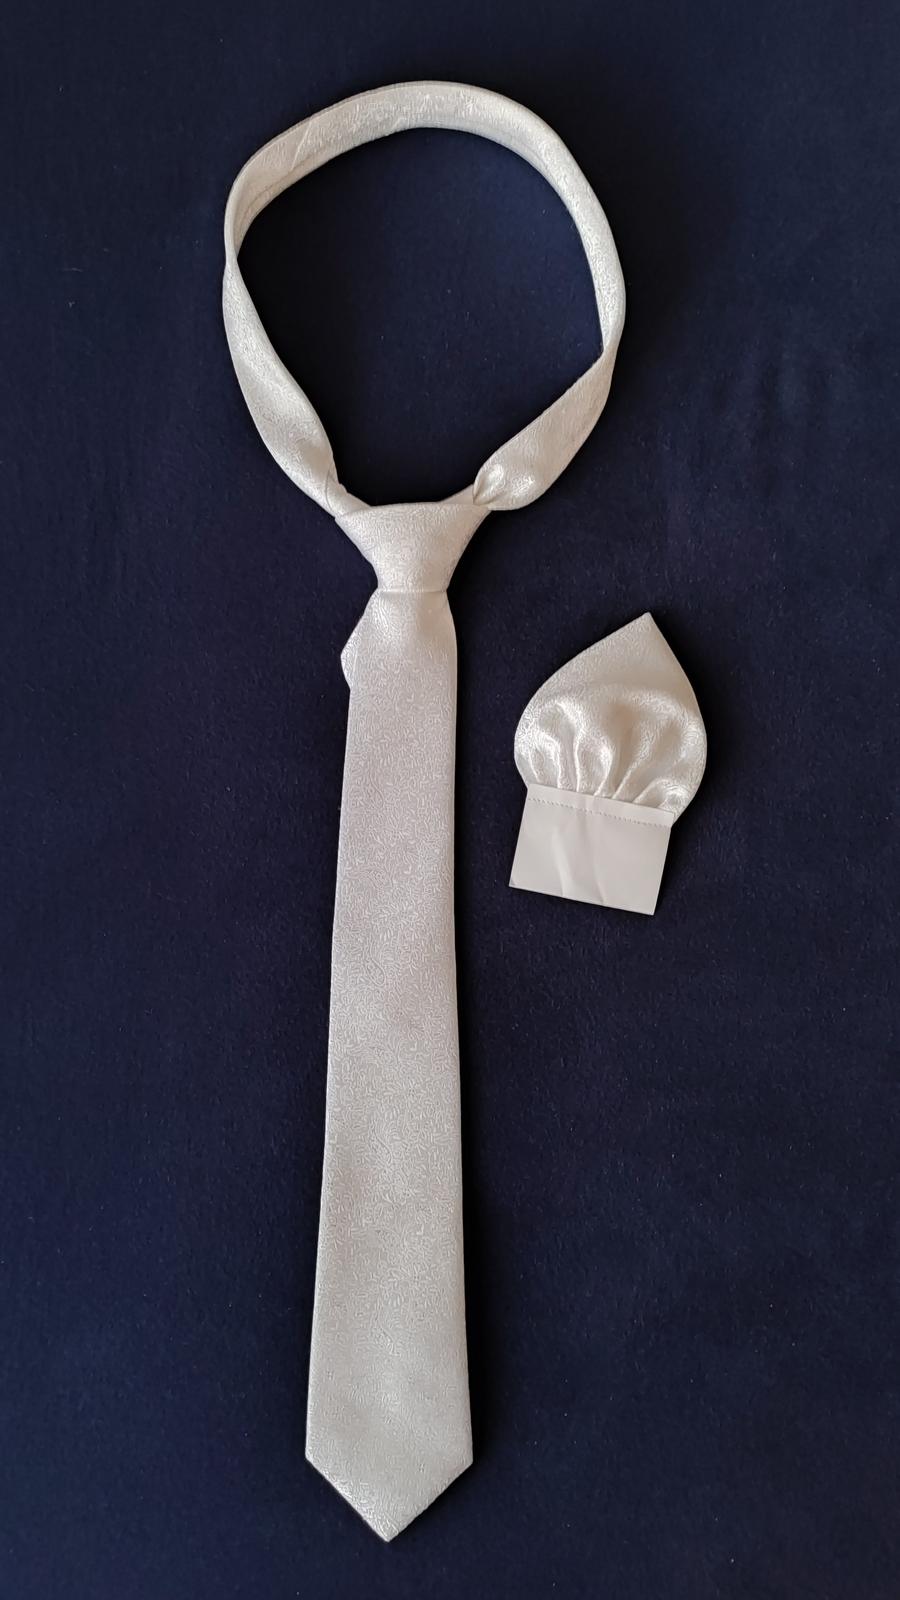 bílá svatební kravata s kapesníčkem - Obrázek č. 1